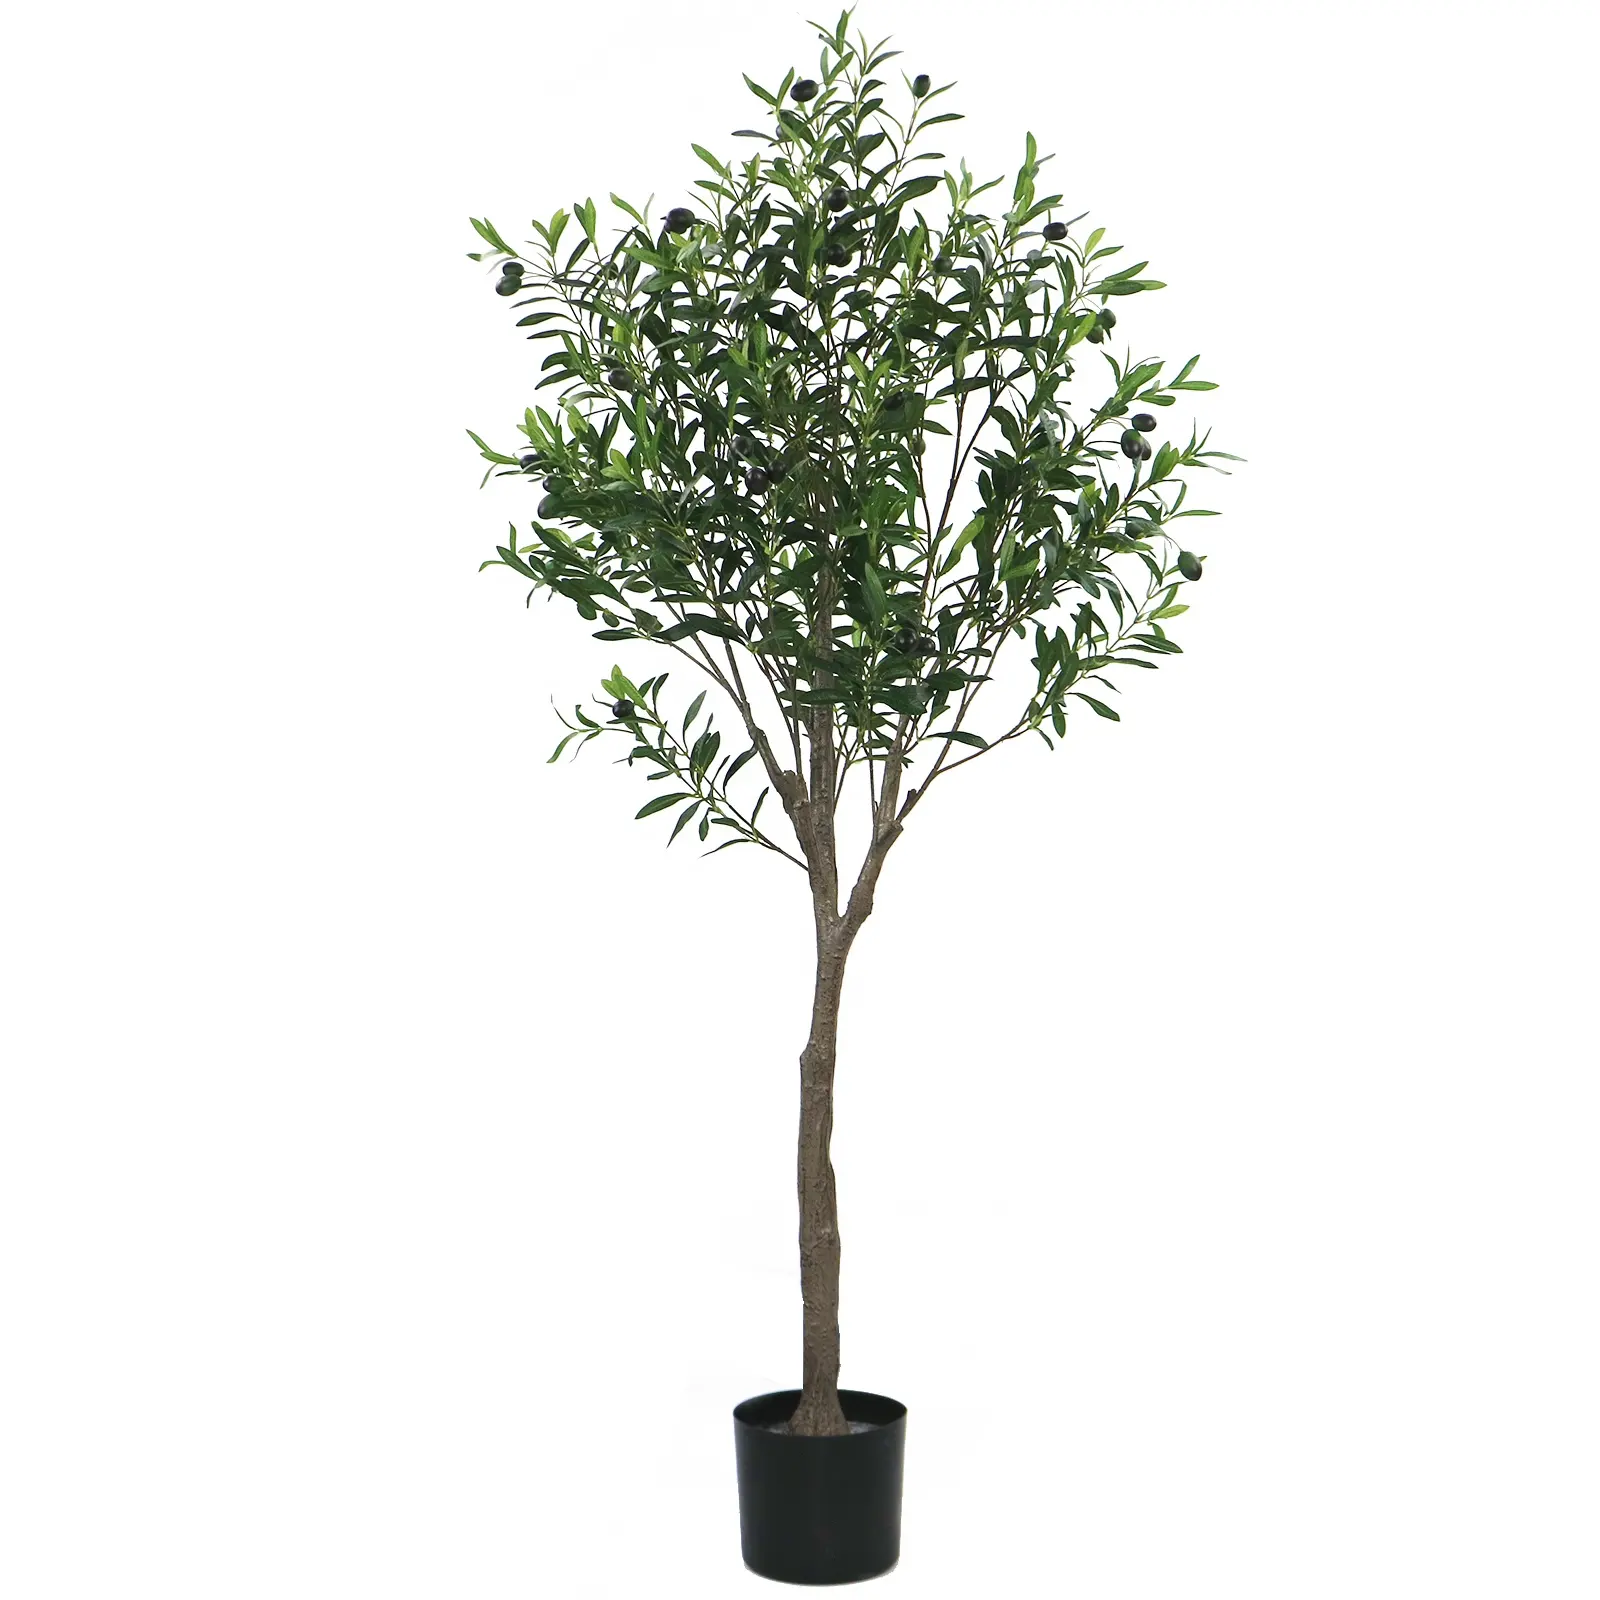 Árbol de olivo artificial, decoración de jardín resistente a los rayos UV, 150cm de alto